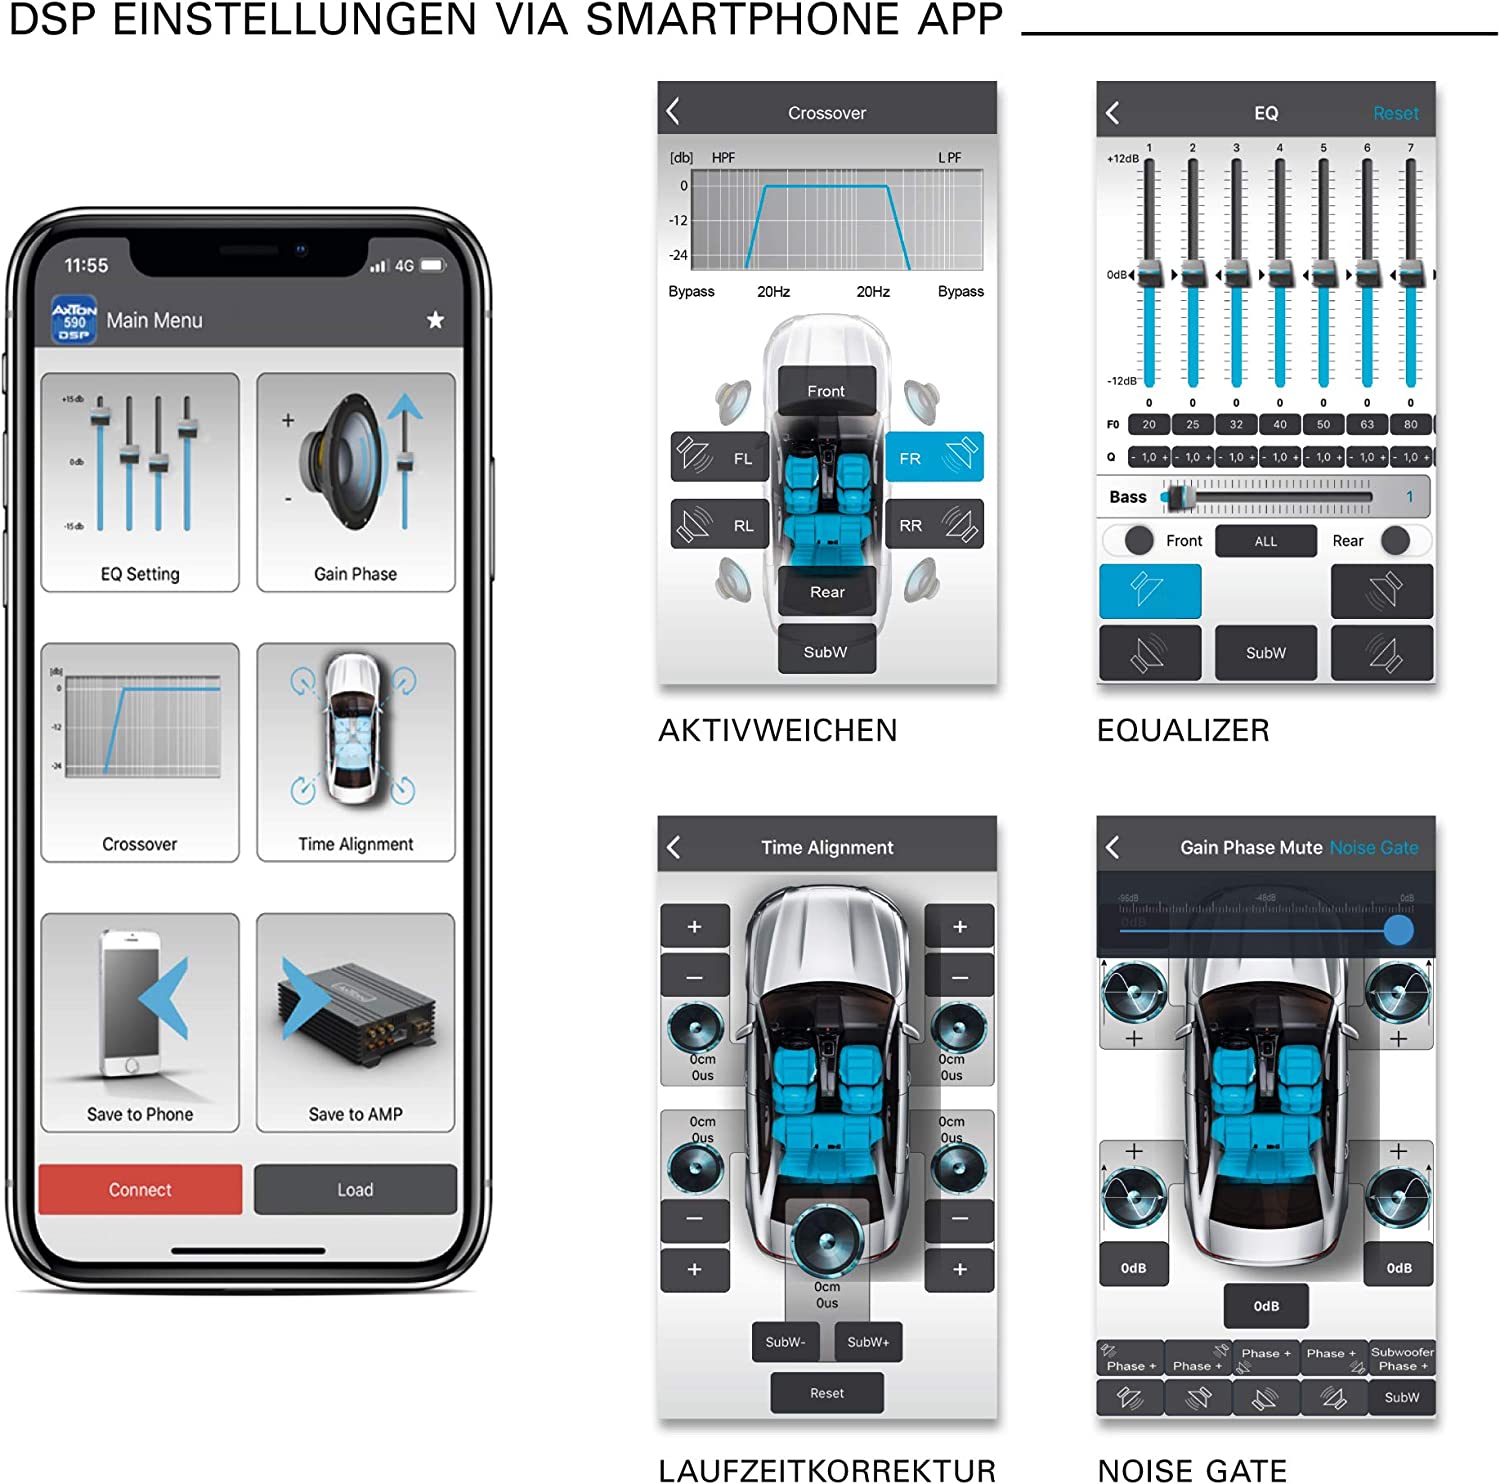 AXTON A642DSP 5-Kanal Plug & Play DSP App Verstärker iOS, Android App